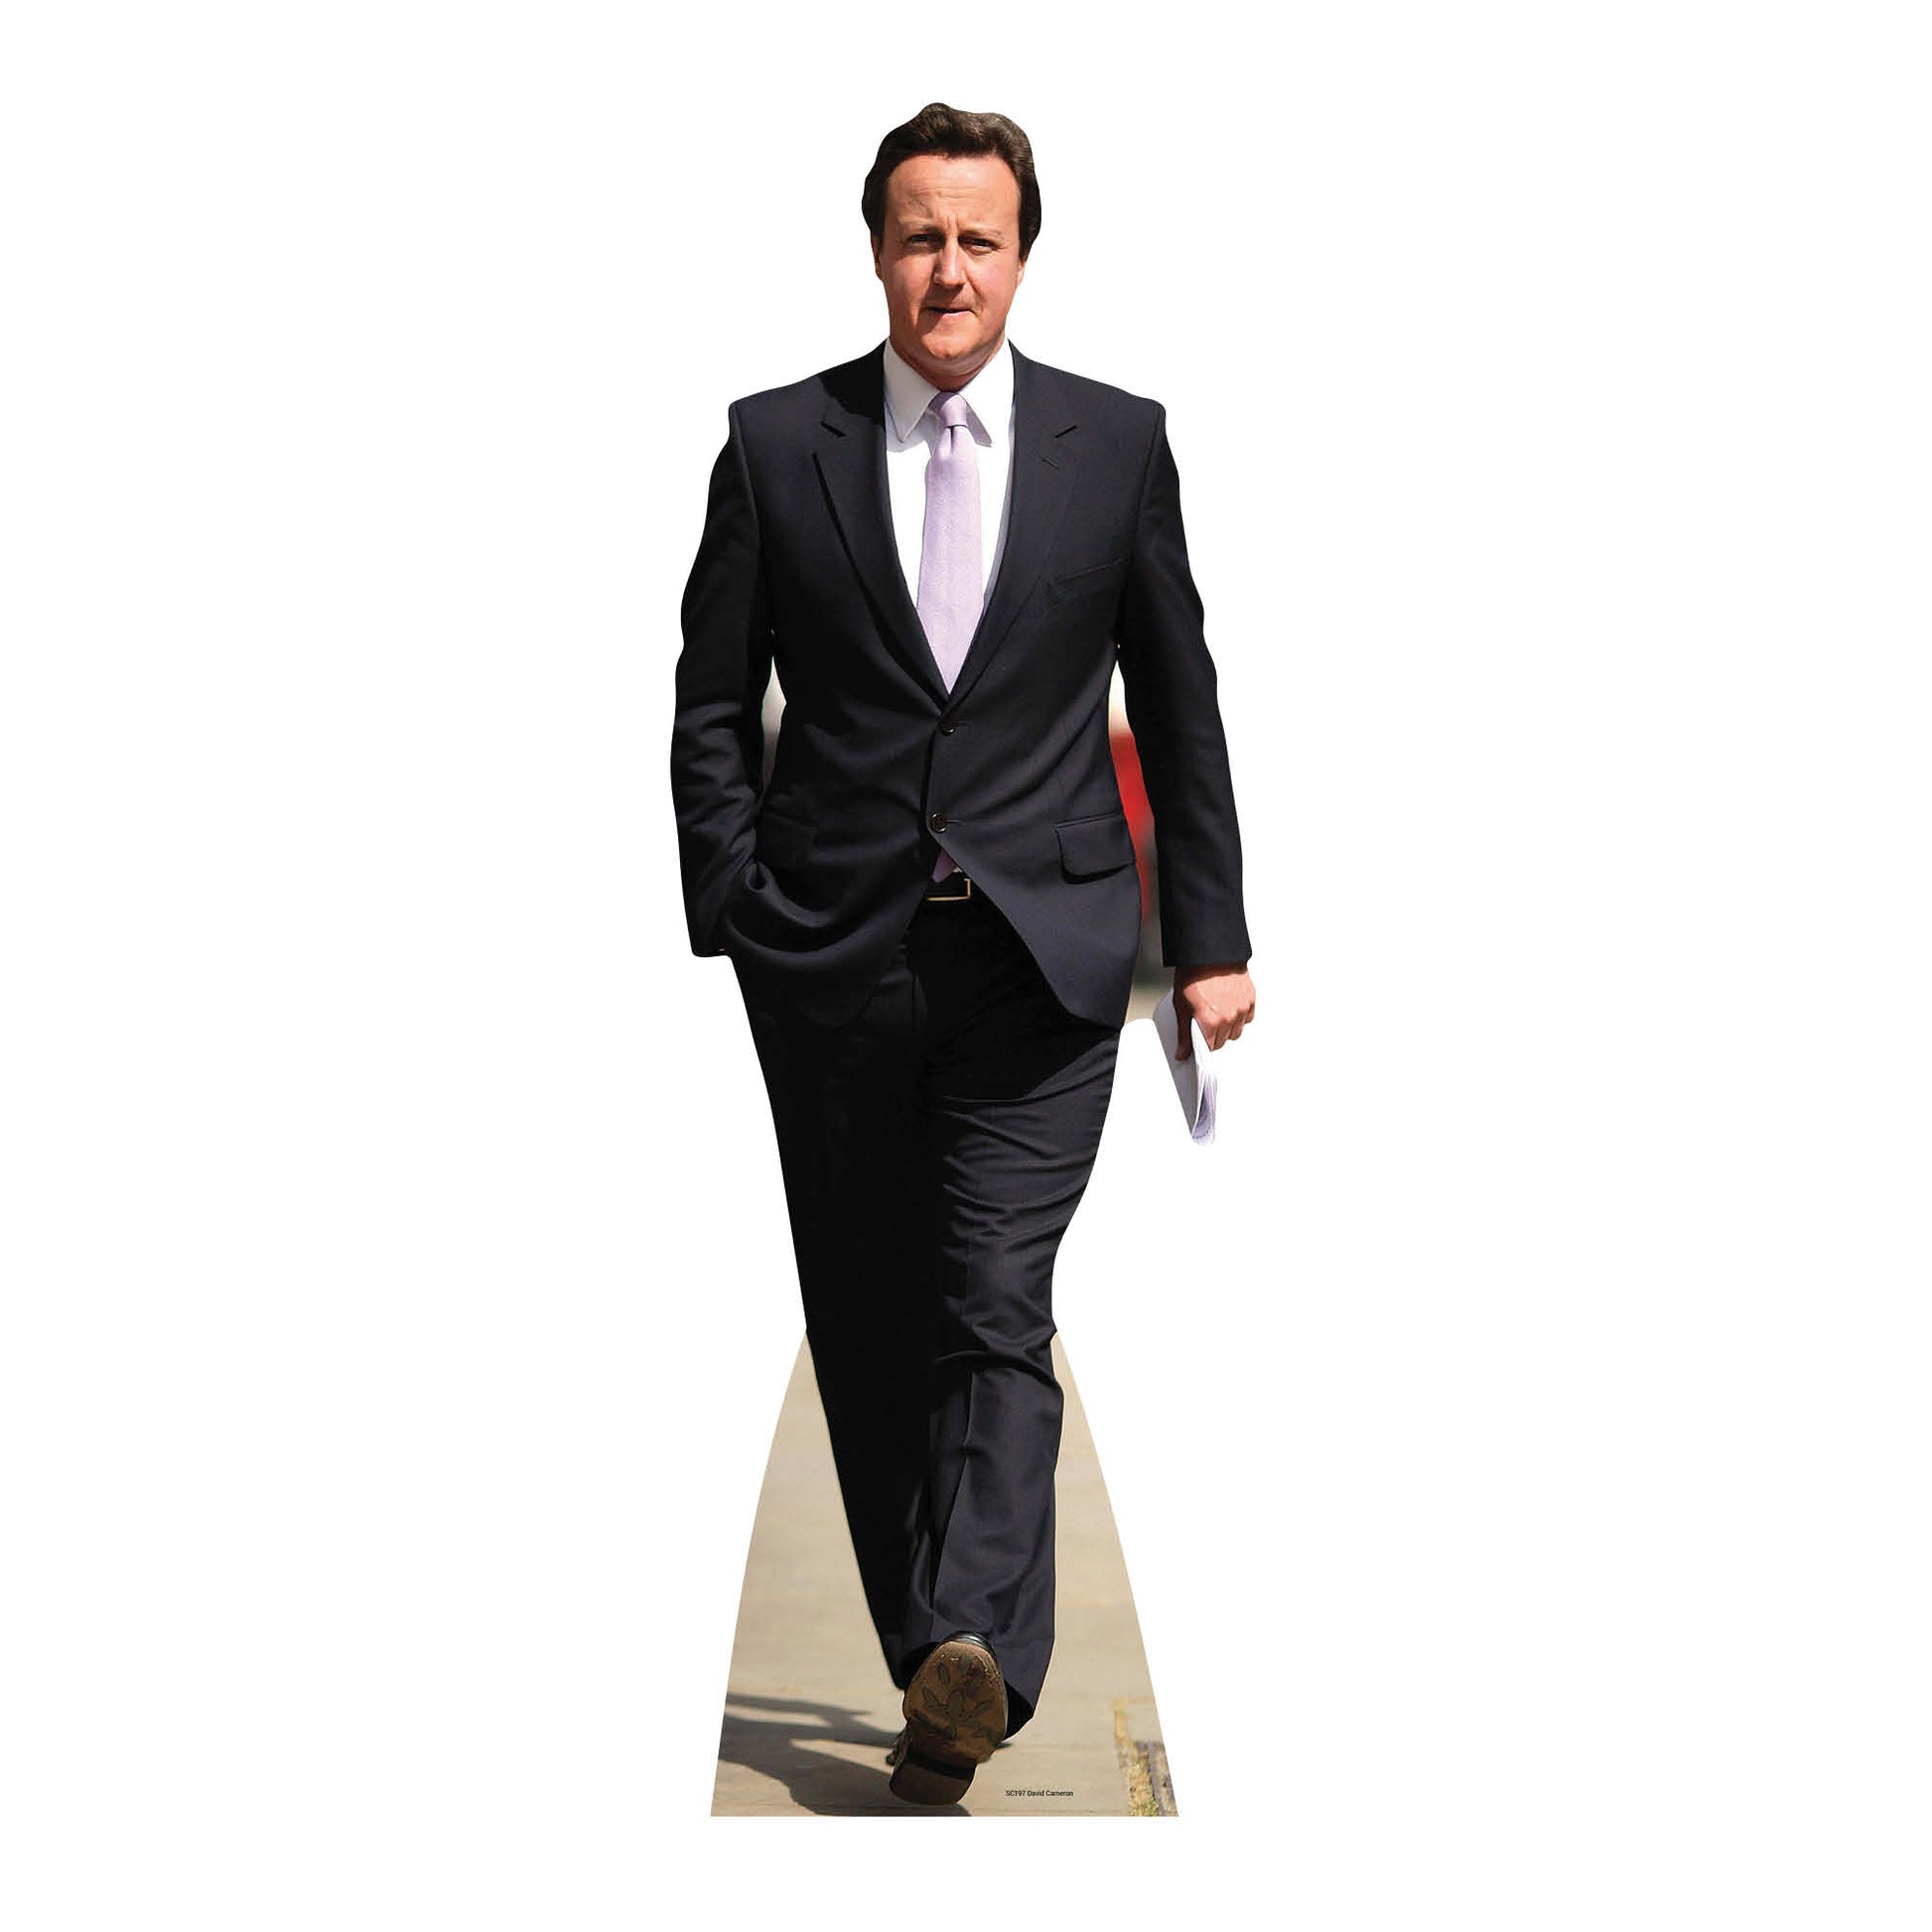 David Cameron Cardboard Cutout